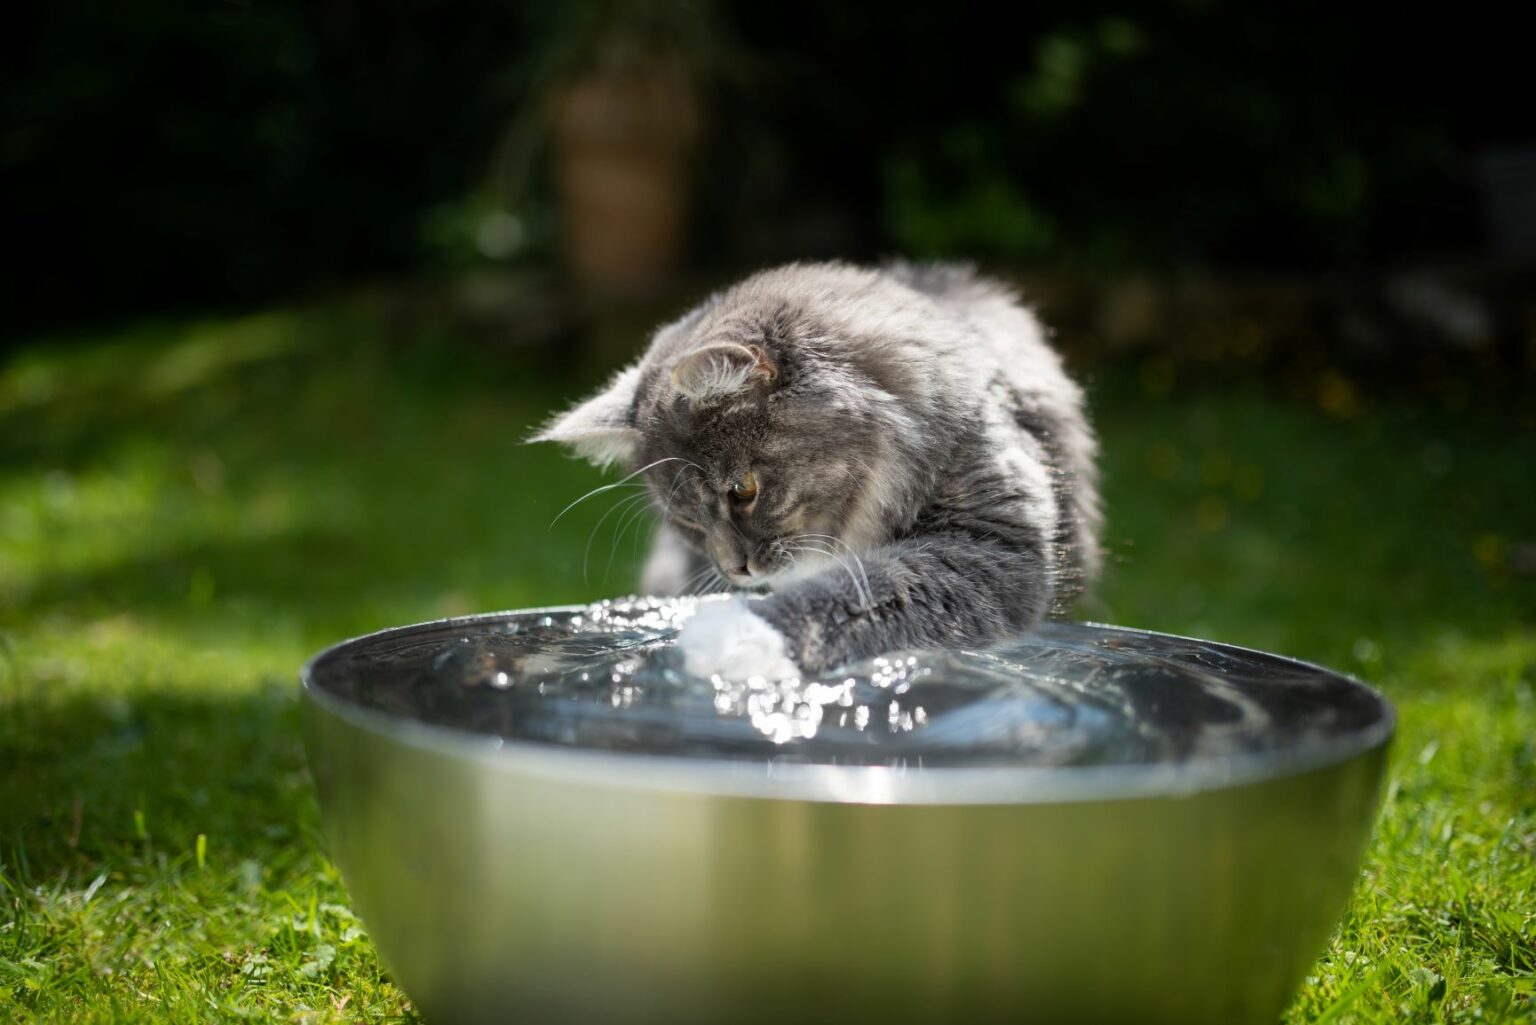 Kočka sedí před miskou a hraje si s vodou